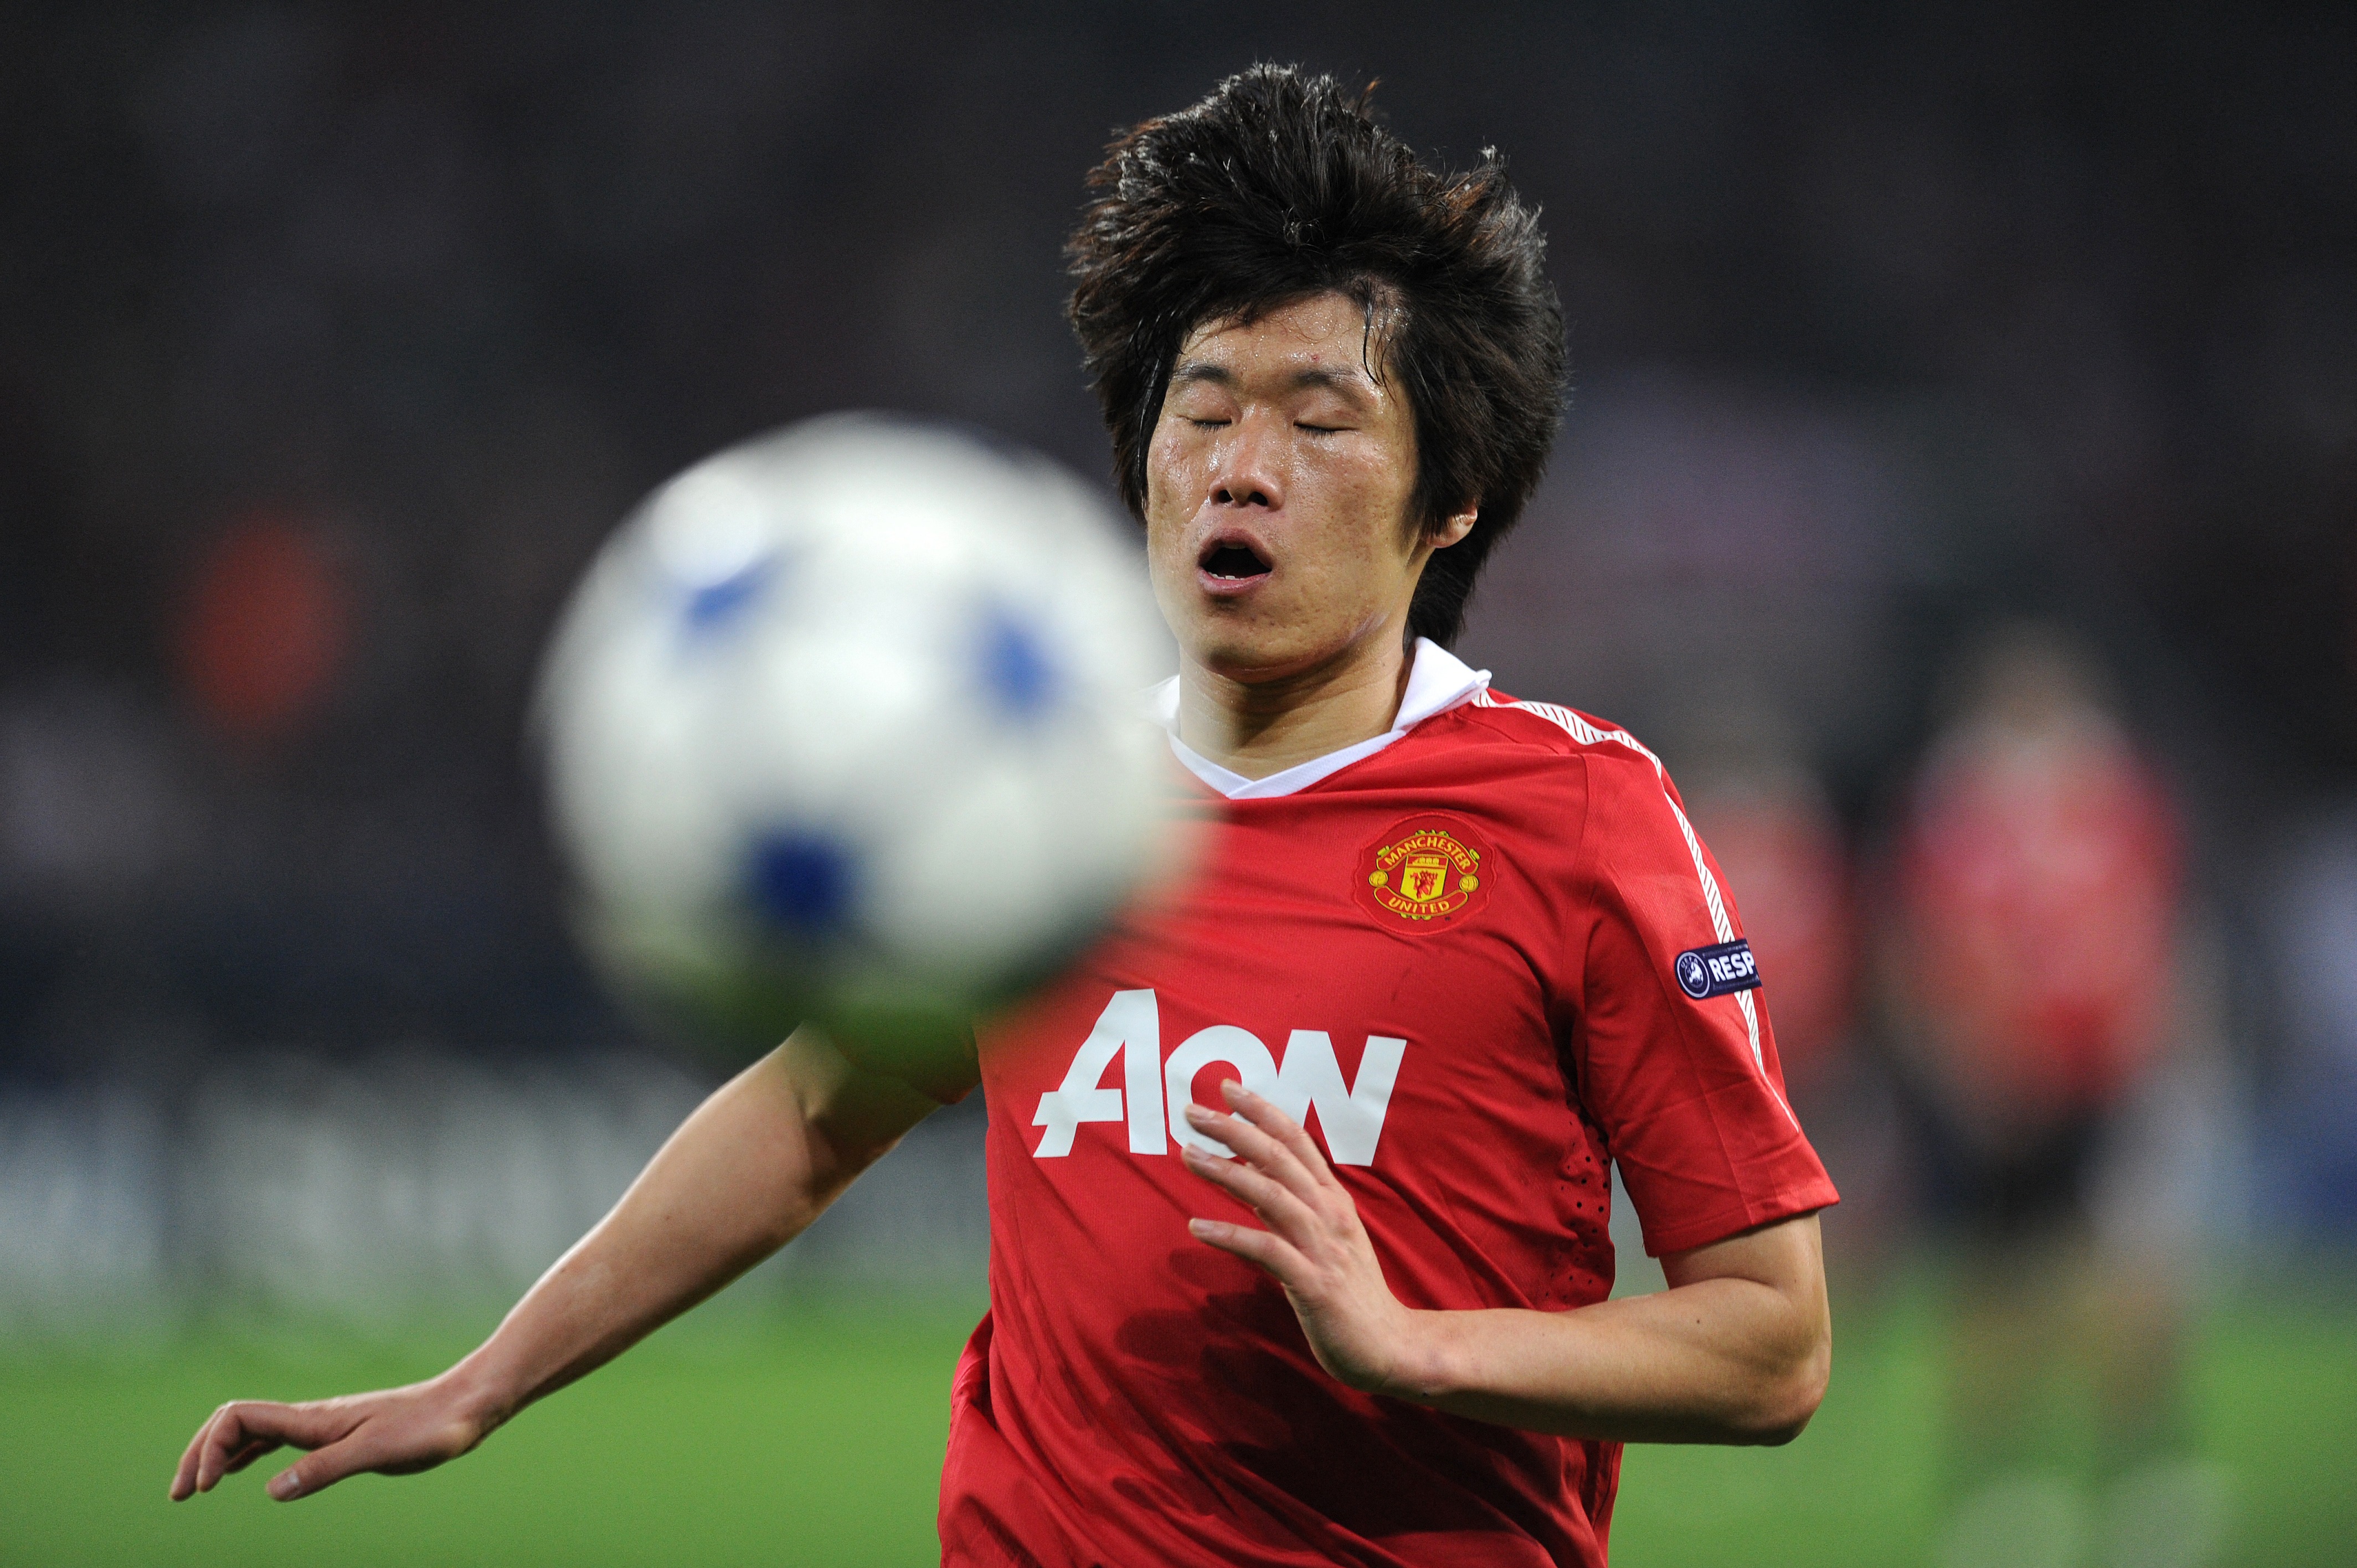 A Manchester korábbi focistája arra kéri a szurkolókat, ne énekeljenek kutyahúsevős dalokat a koreai játékosokról